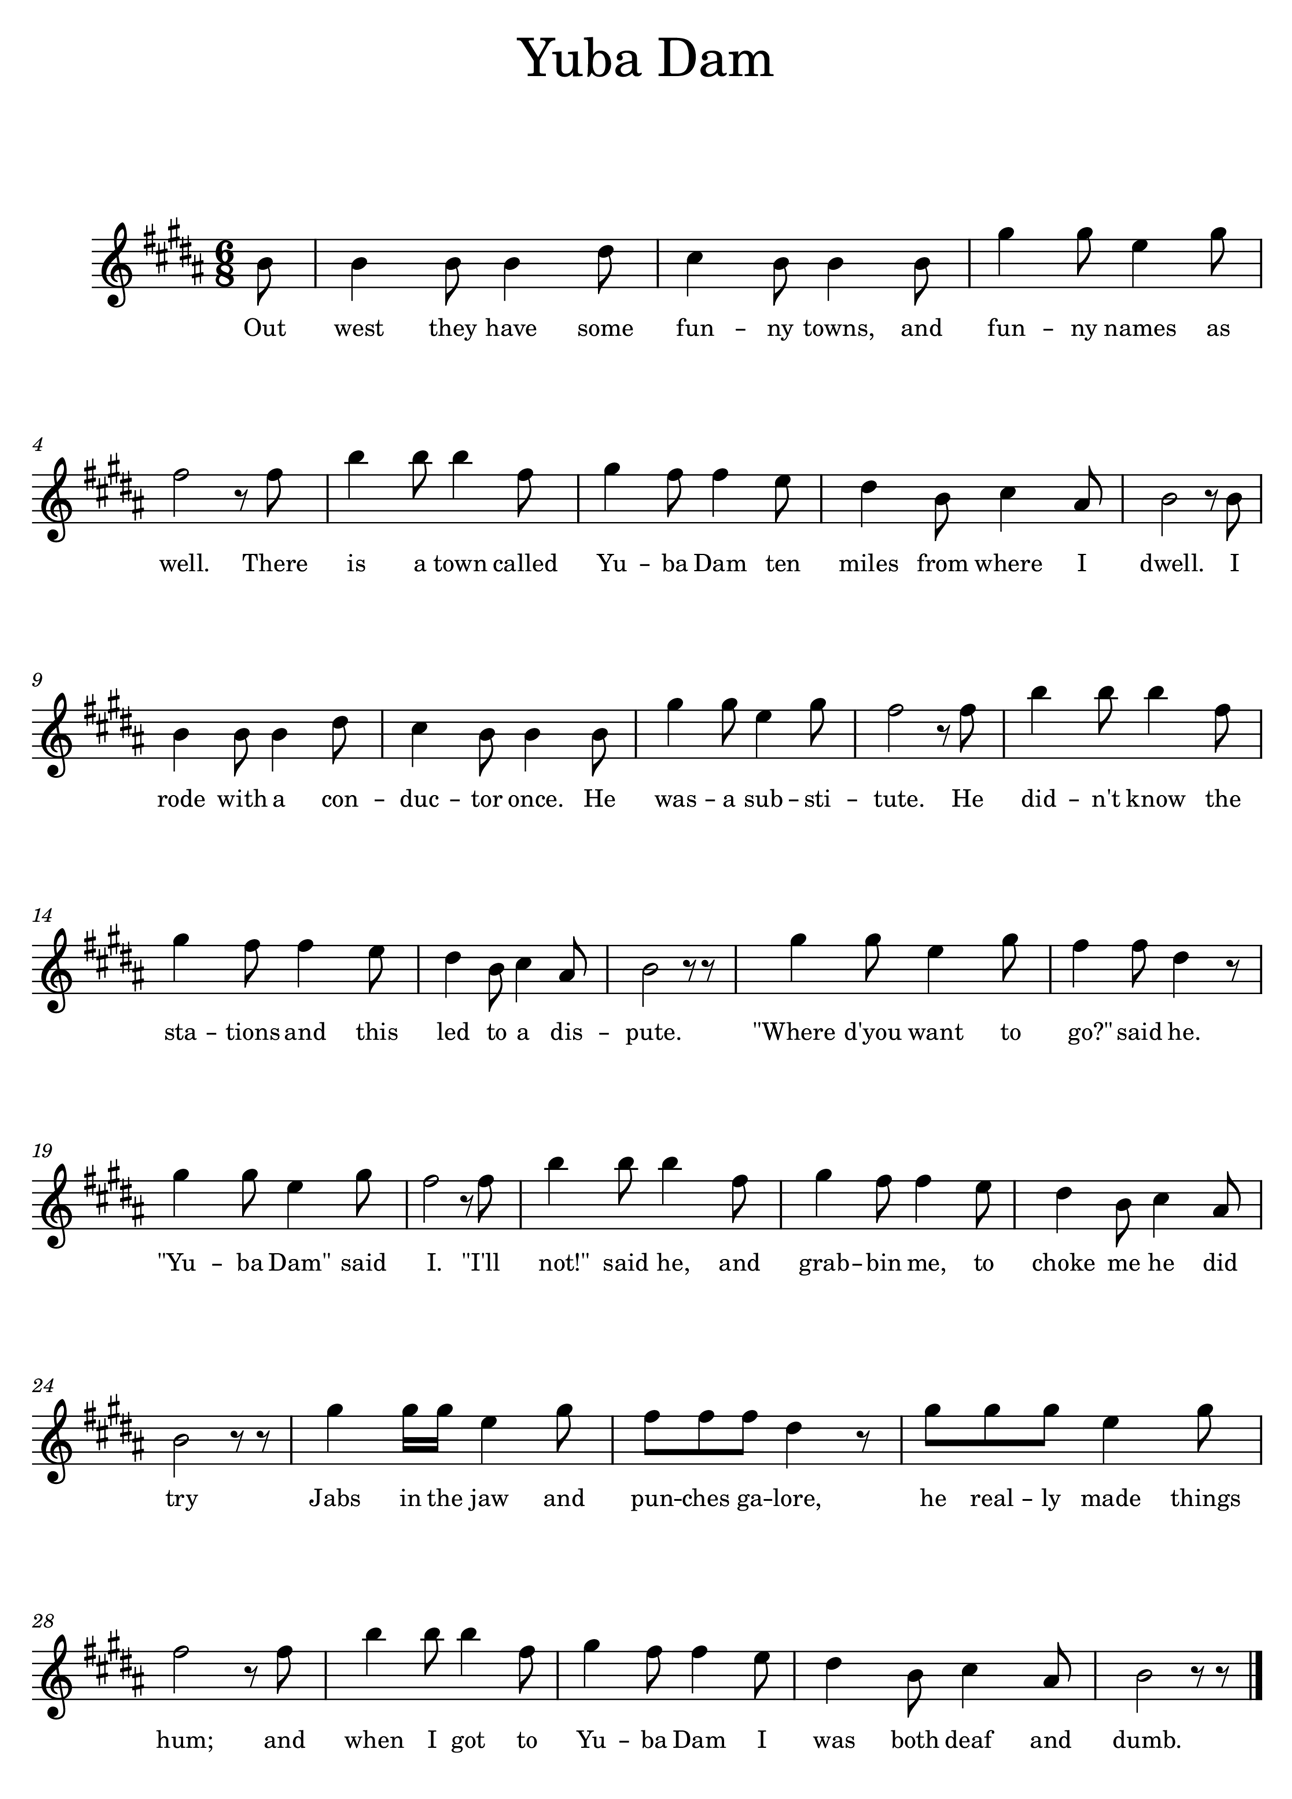 'Yuba Dam' sheet music